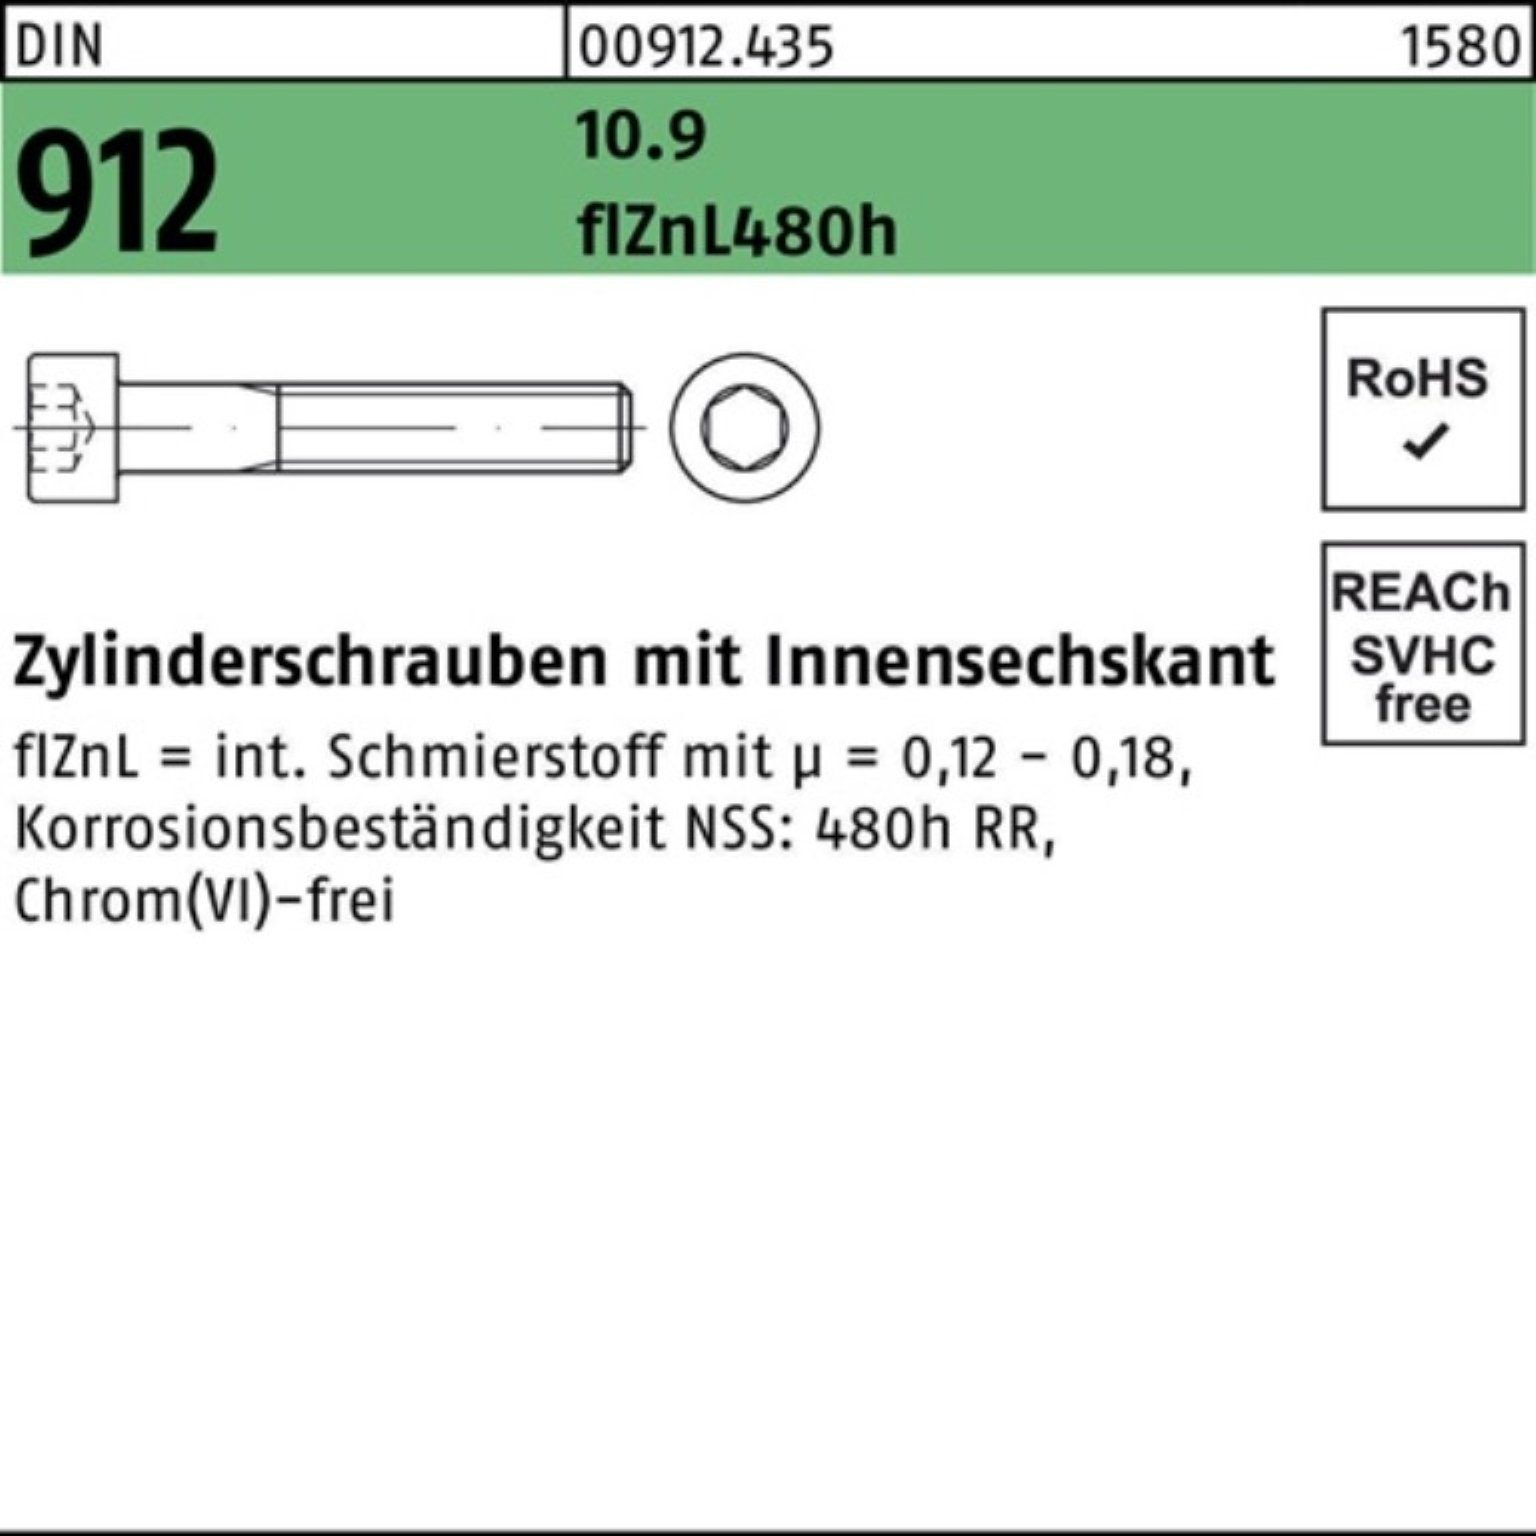 Reyher Zylinderschraube 100er Innen-6kt flZnL/nc/x 912 10.9 DIN Zylinderschraube Pack M20x130